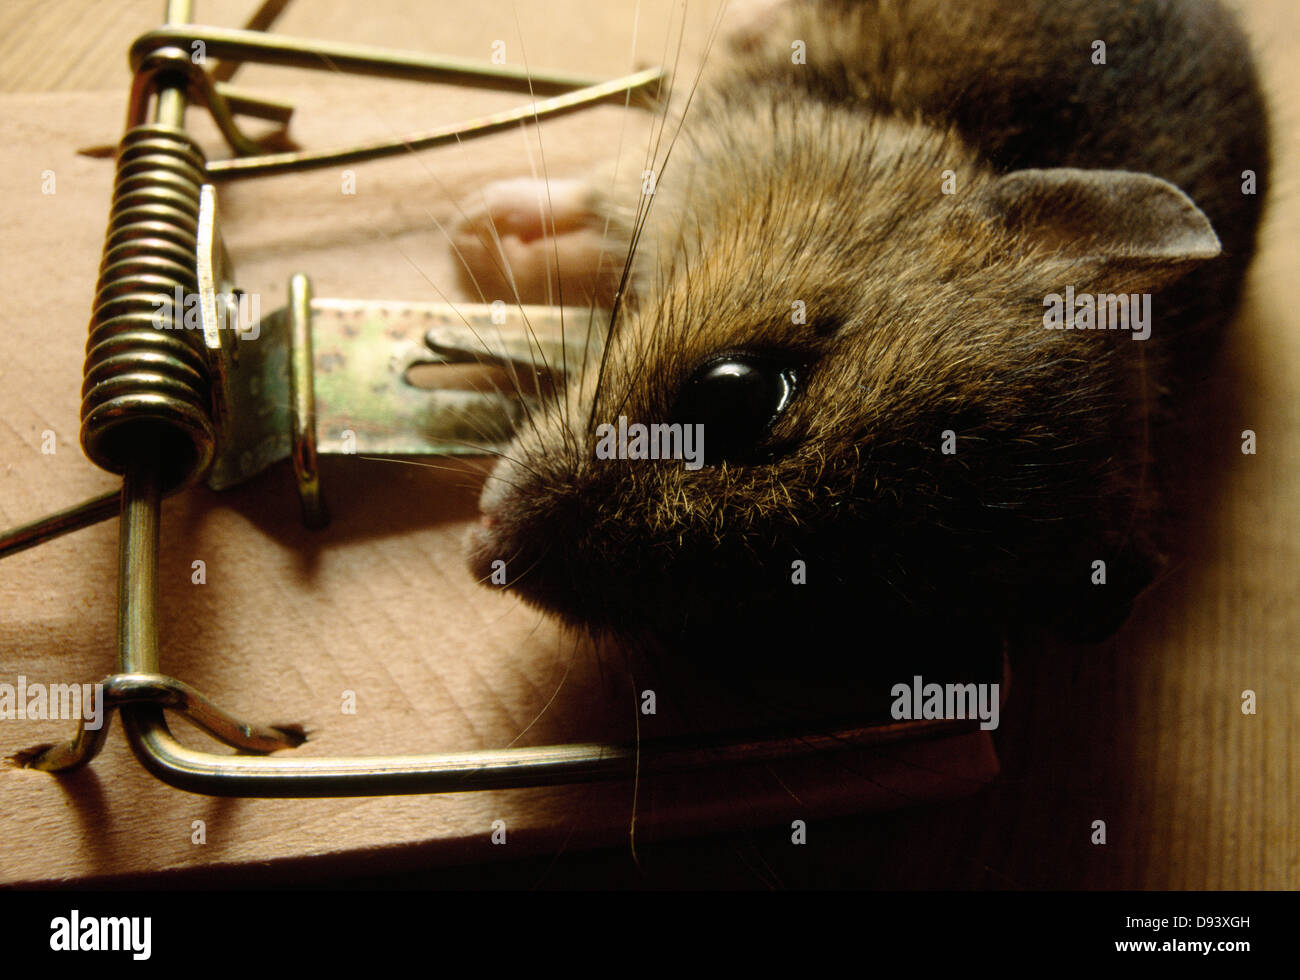 Trampa para ratas fotografías e imágenes de alta resolución - Alamy